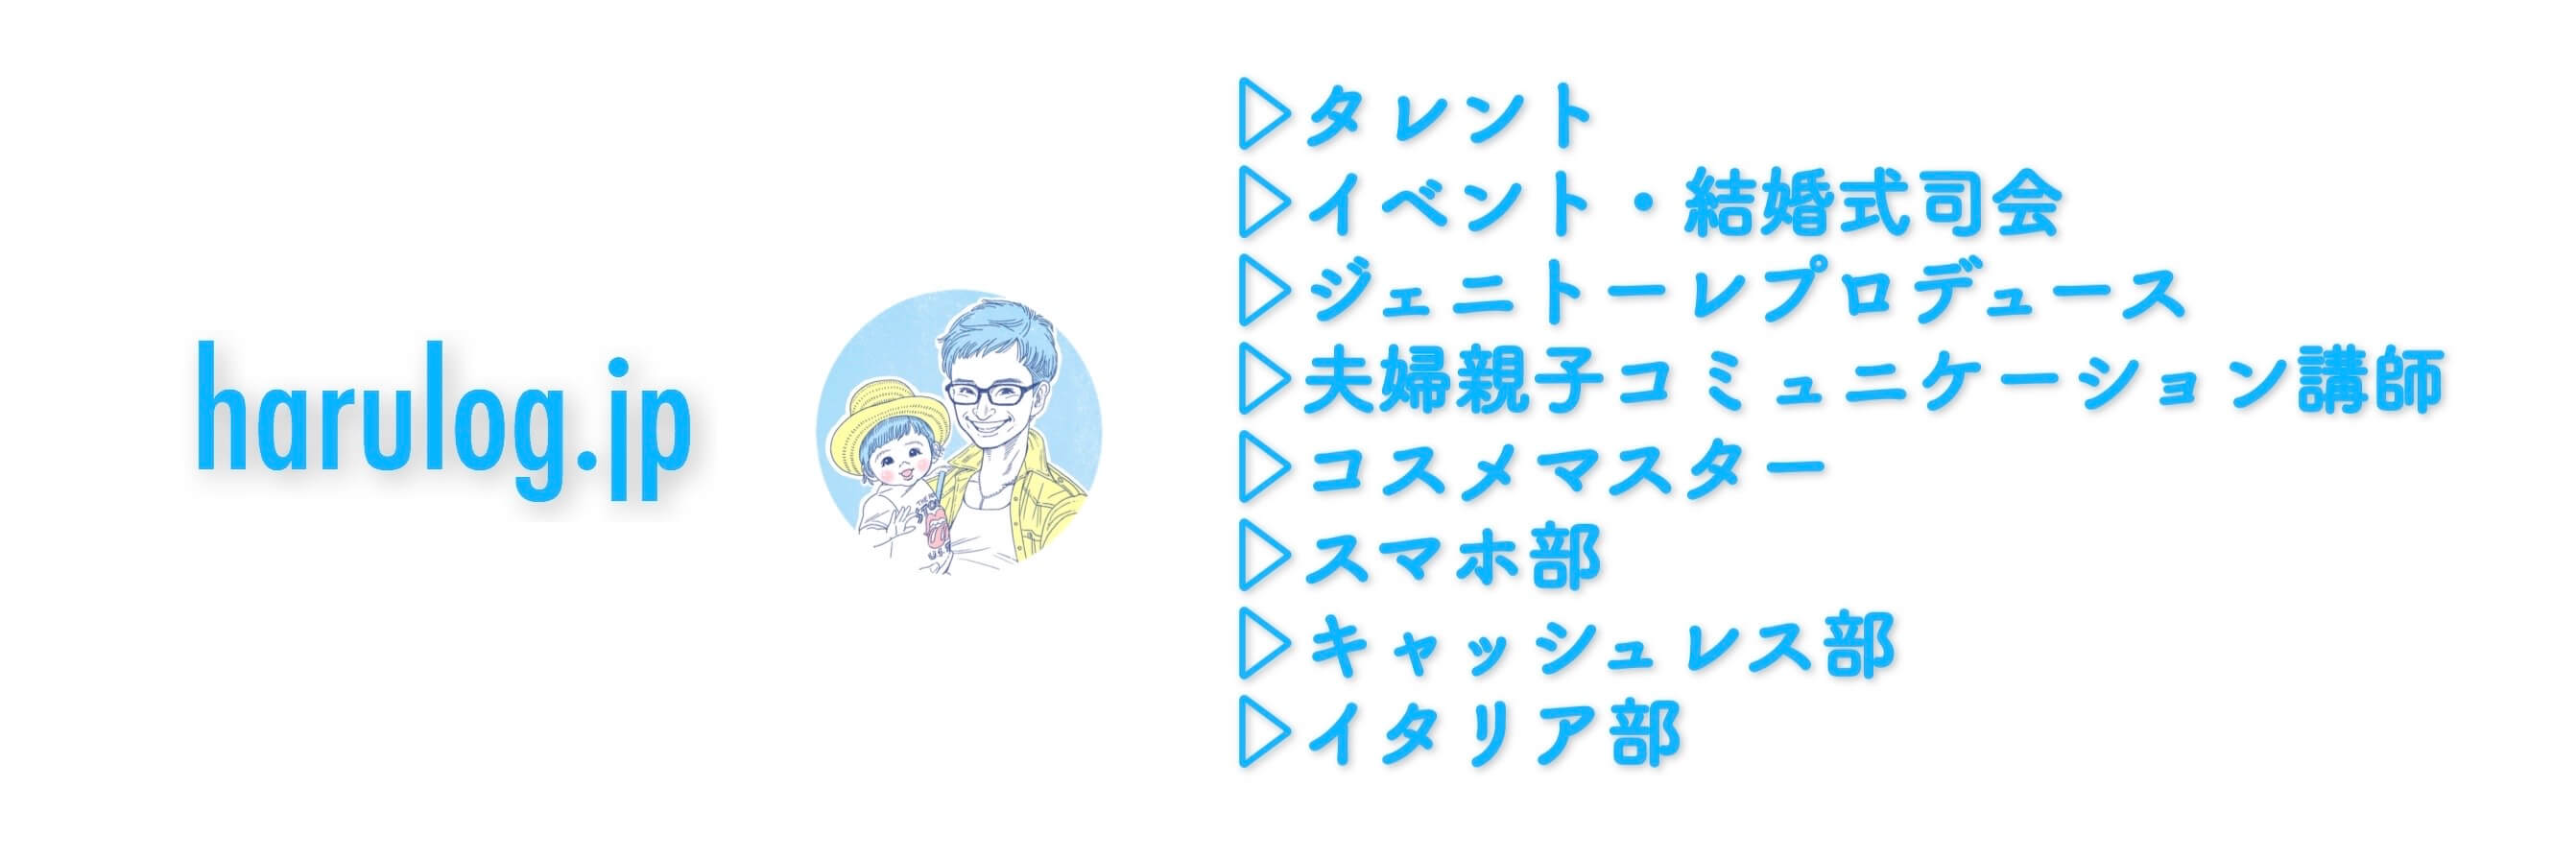 子供用歯磨き粉 安全 無添加 ジェニトーレハミガキジェルについて 福岡のタレント ハル公式サイト